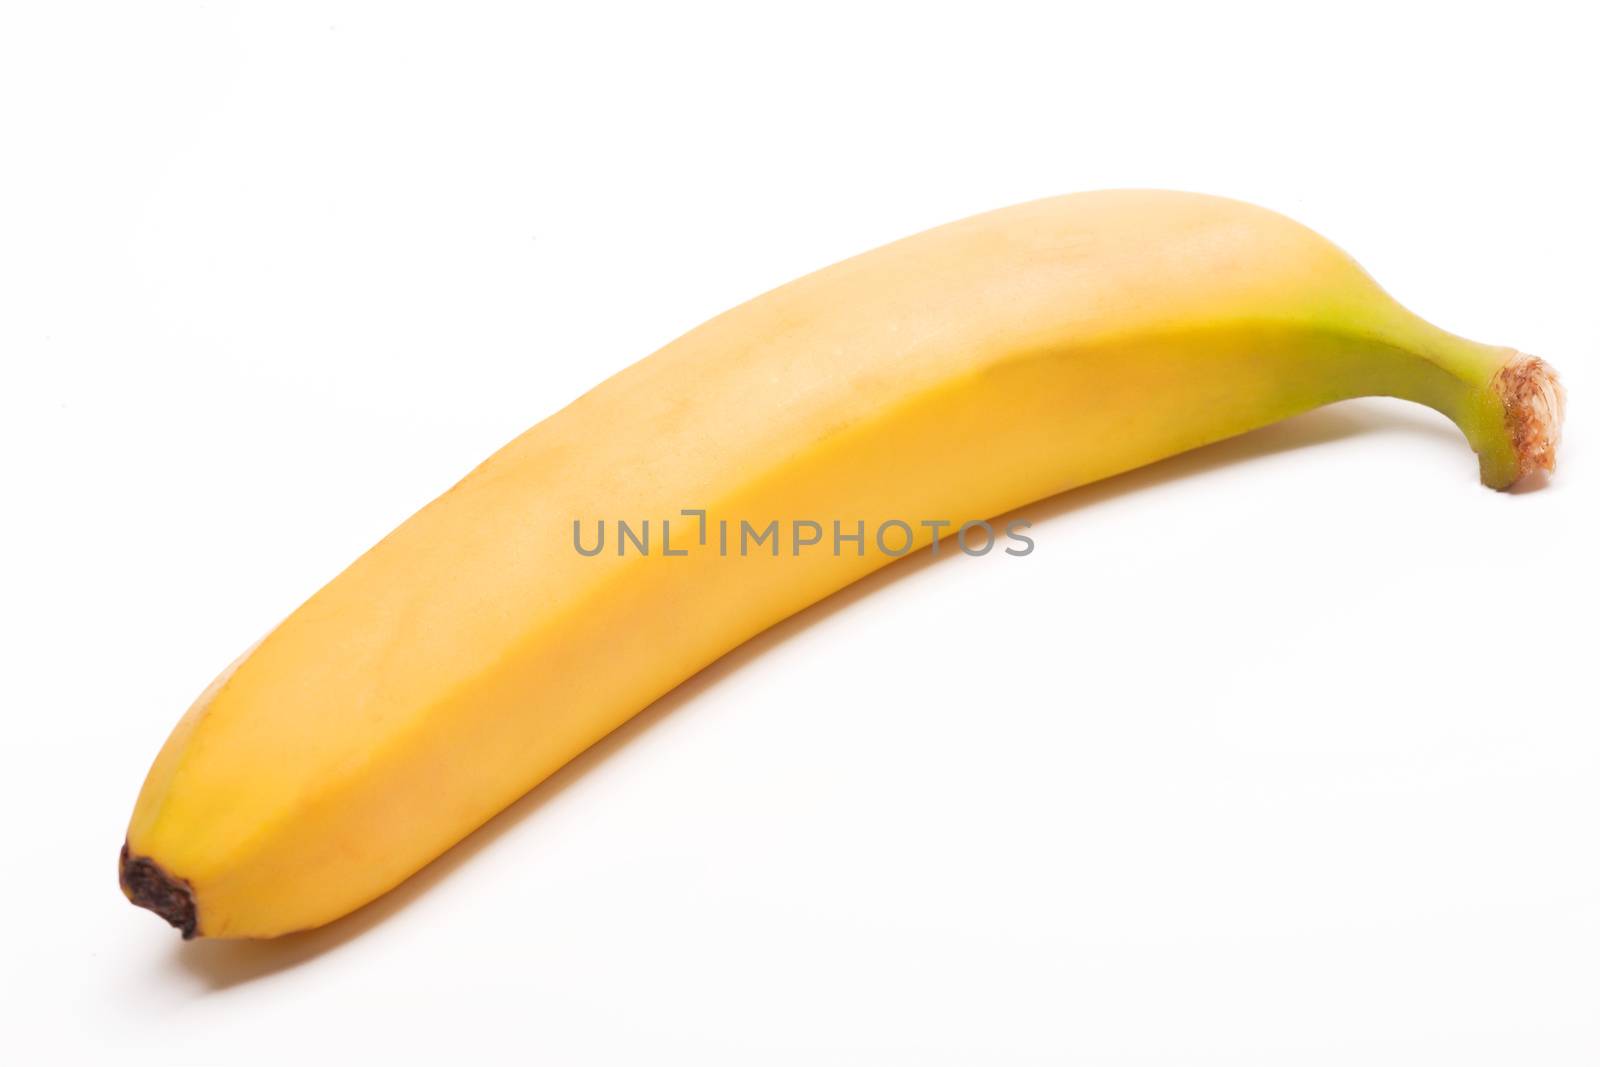 Single banana by ozaiachin